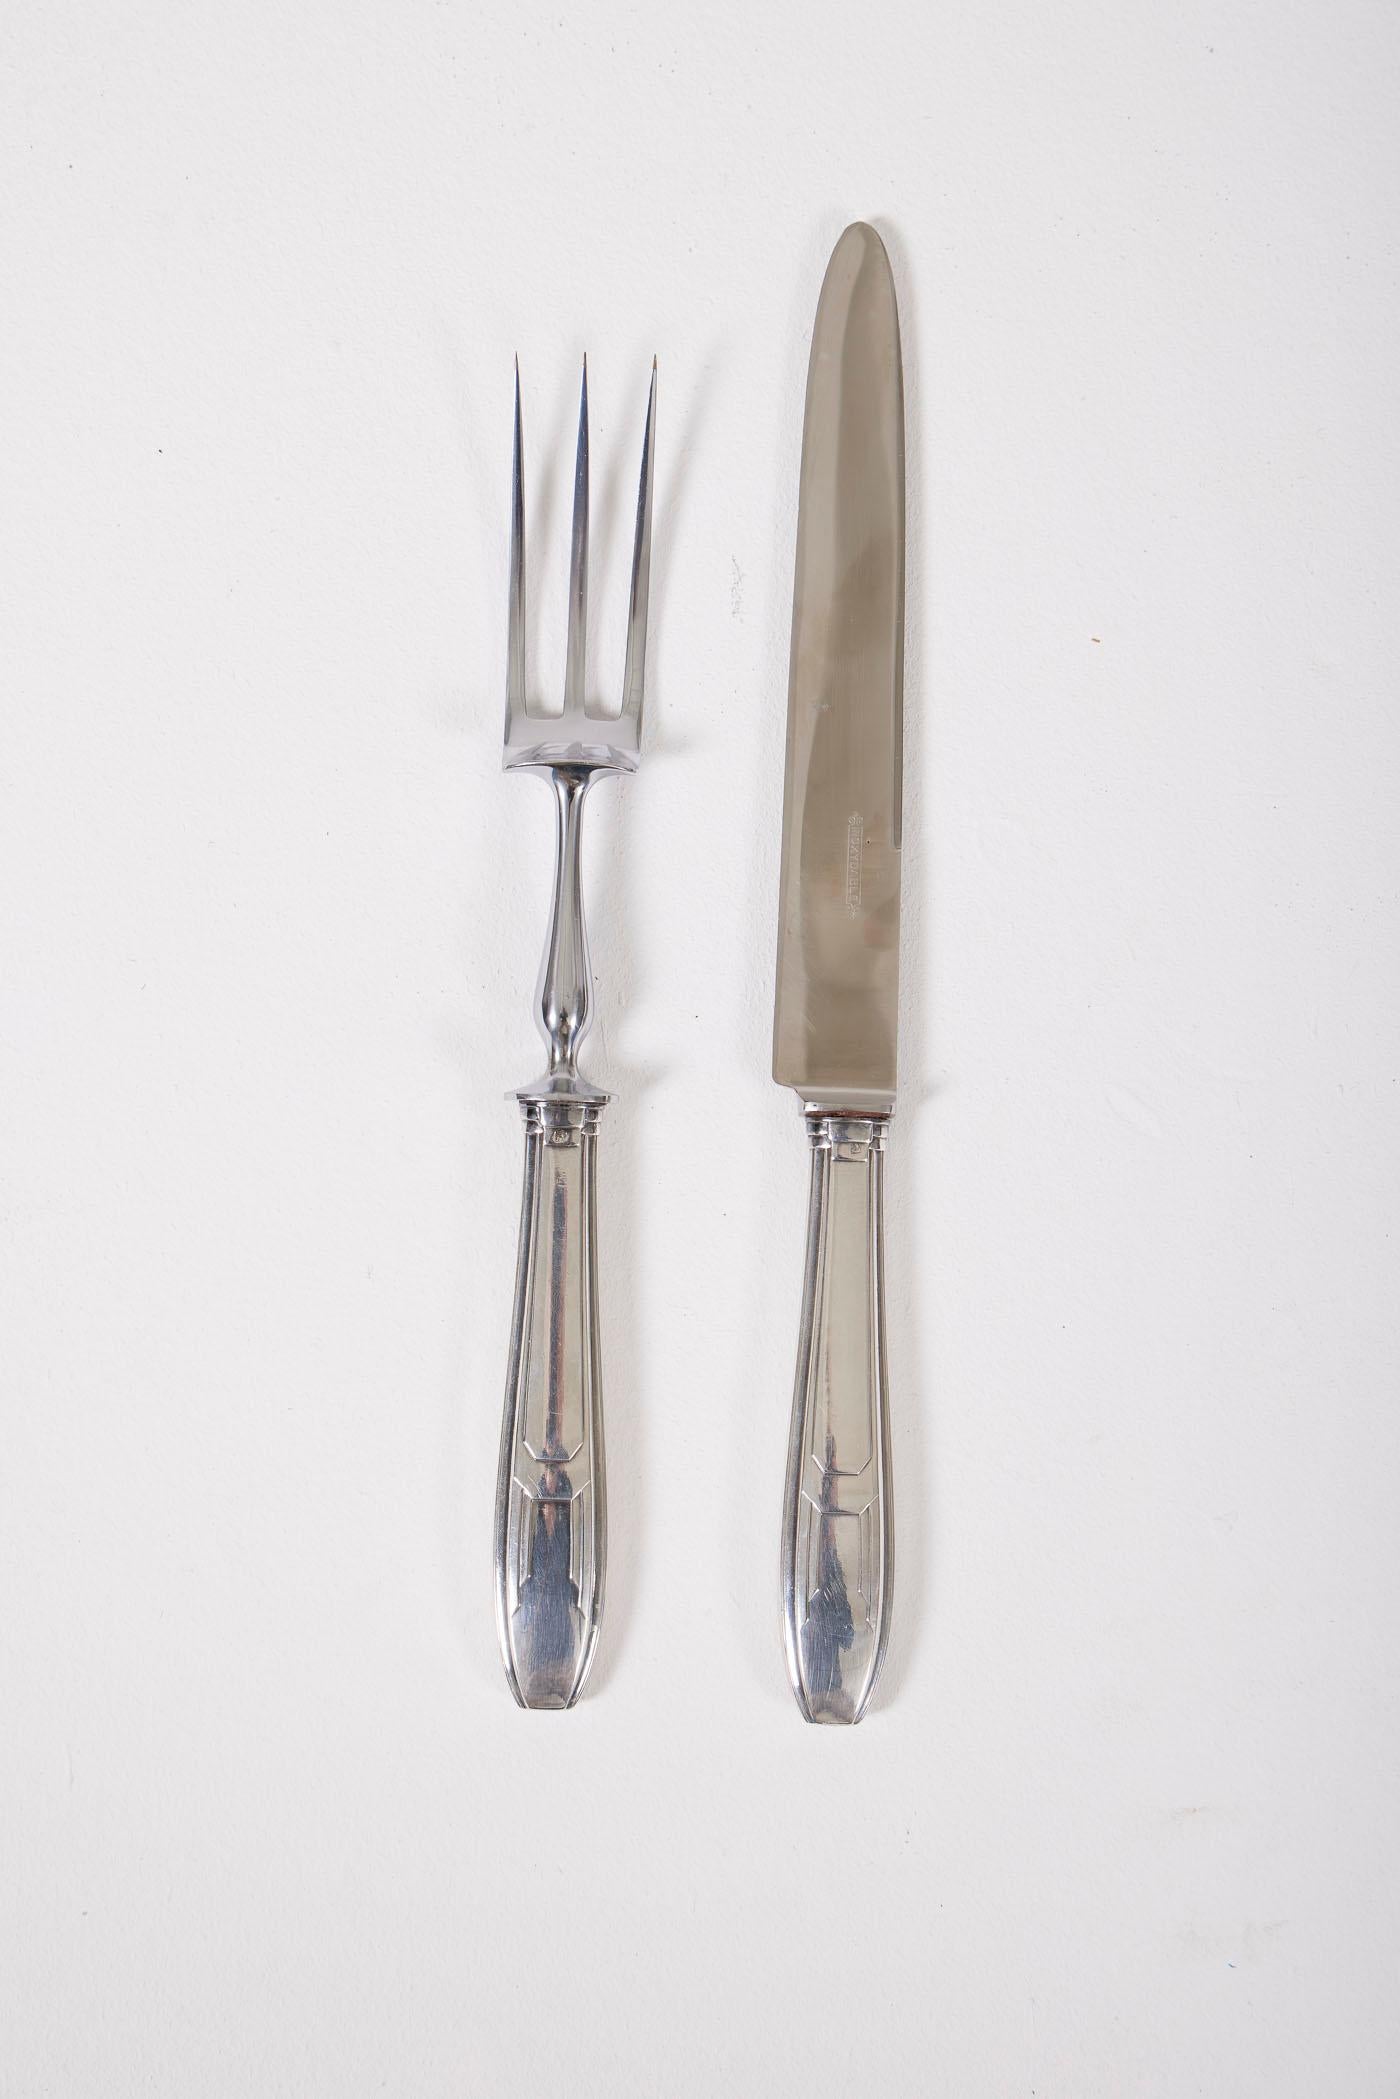 Ustensiles à découper en acier inoxydable de style Art déco, comprenant une fourchette et un couteau. Parfait état.
LP2177